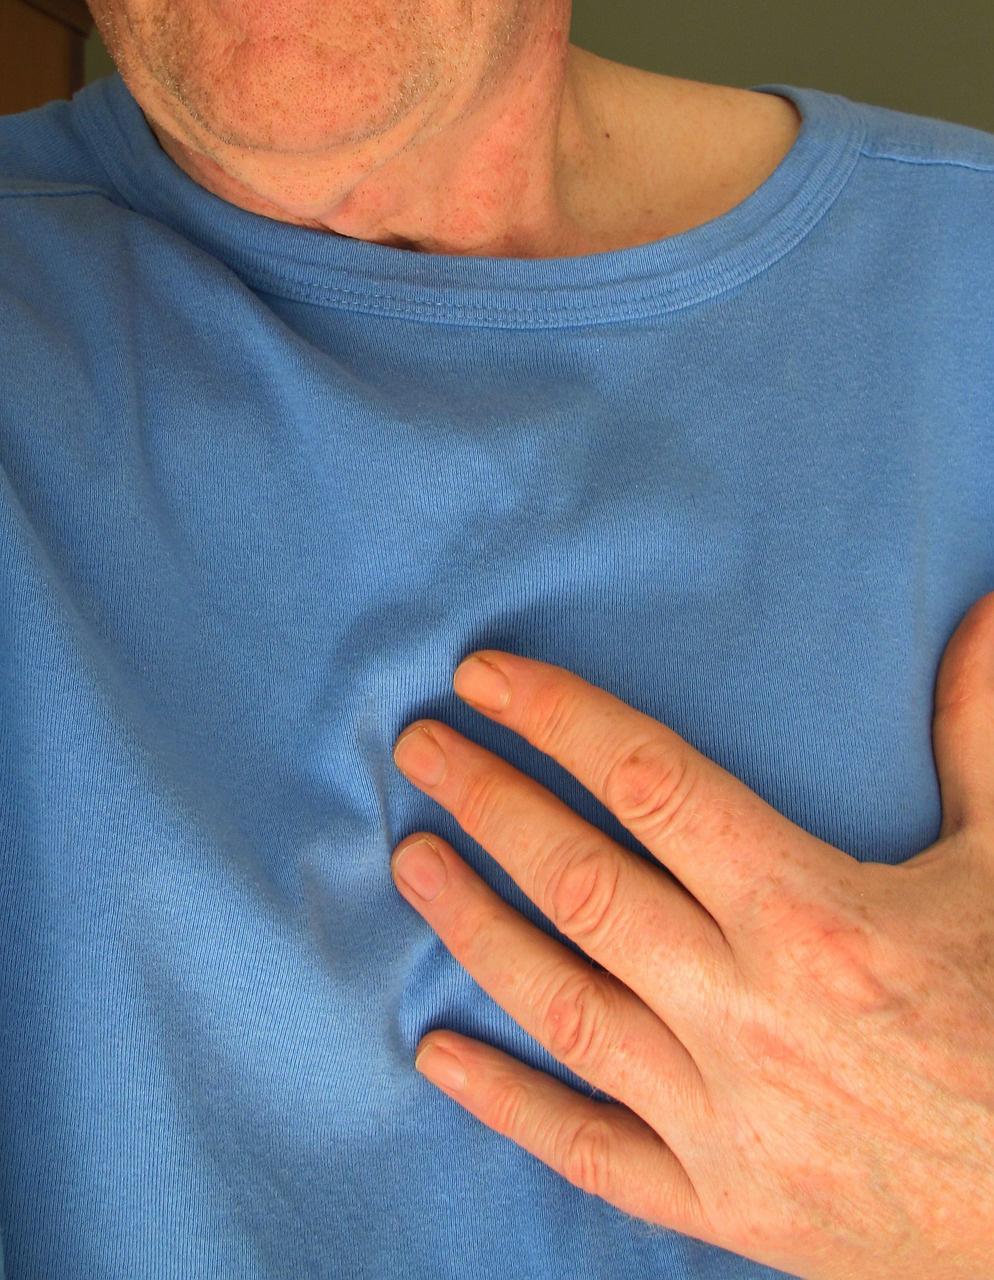 zetten waardoor de klachten van cardiomyopathie en hartfalen aanzienlijk kunnen worden verminderd of, in sommige gevallen, een totale genezing mogelijk